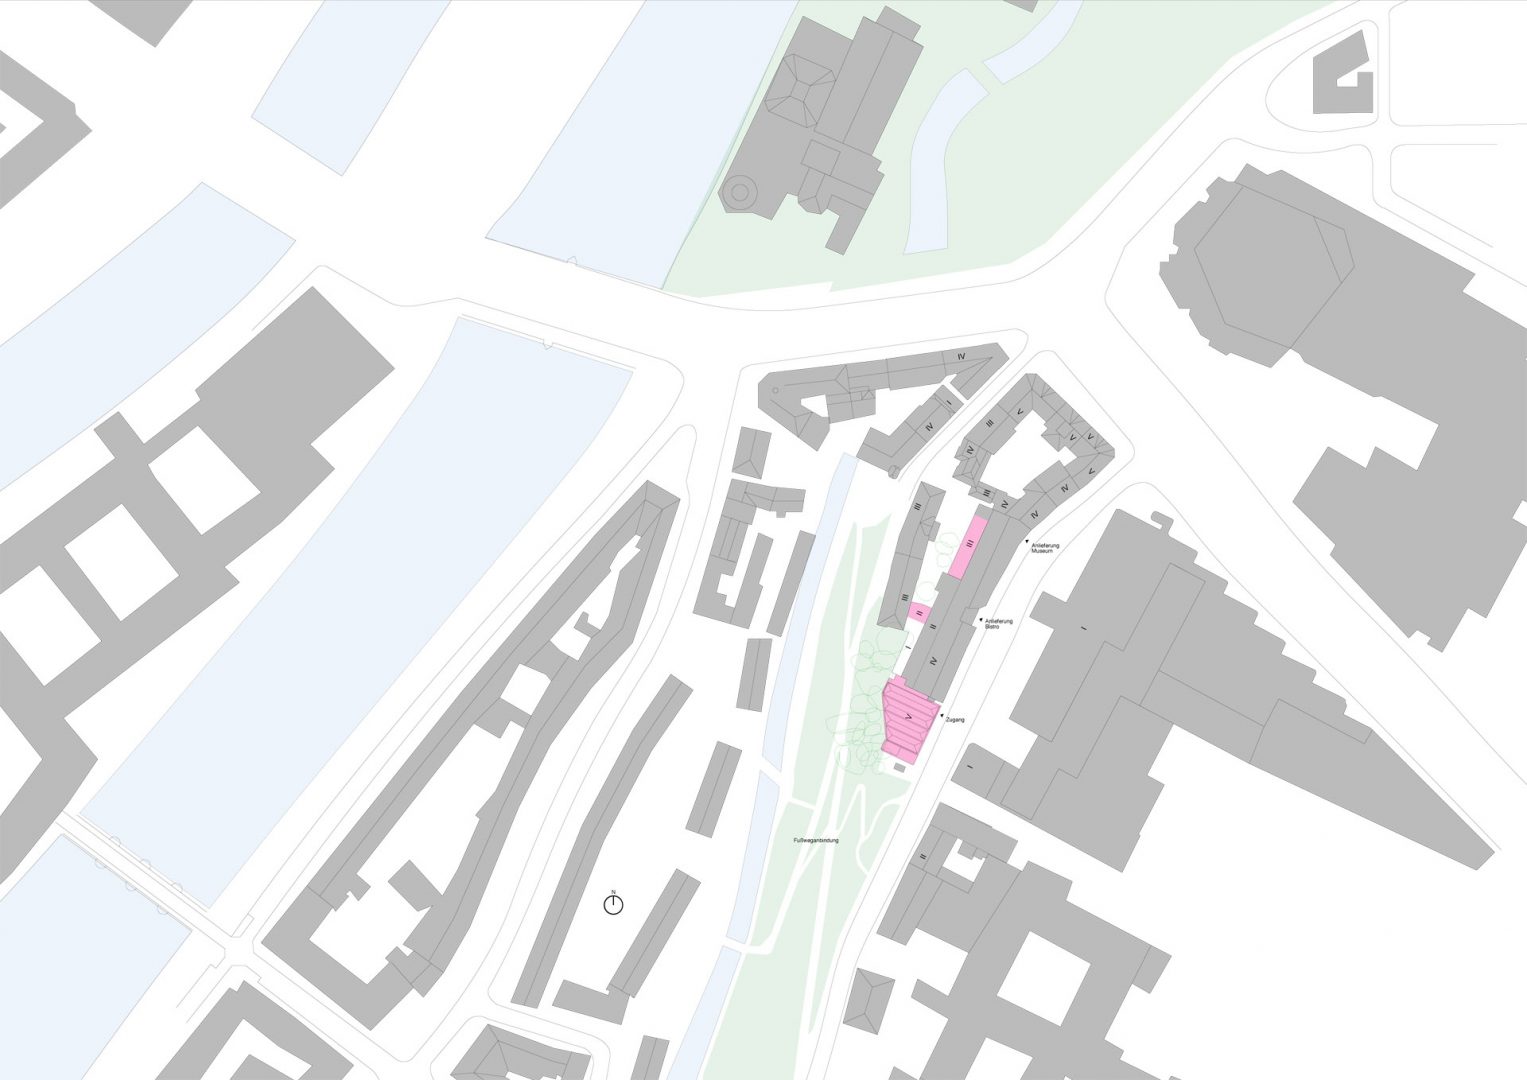 Site location plan of the Sudetendeutsche Museum Munich